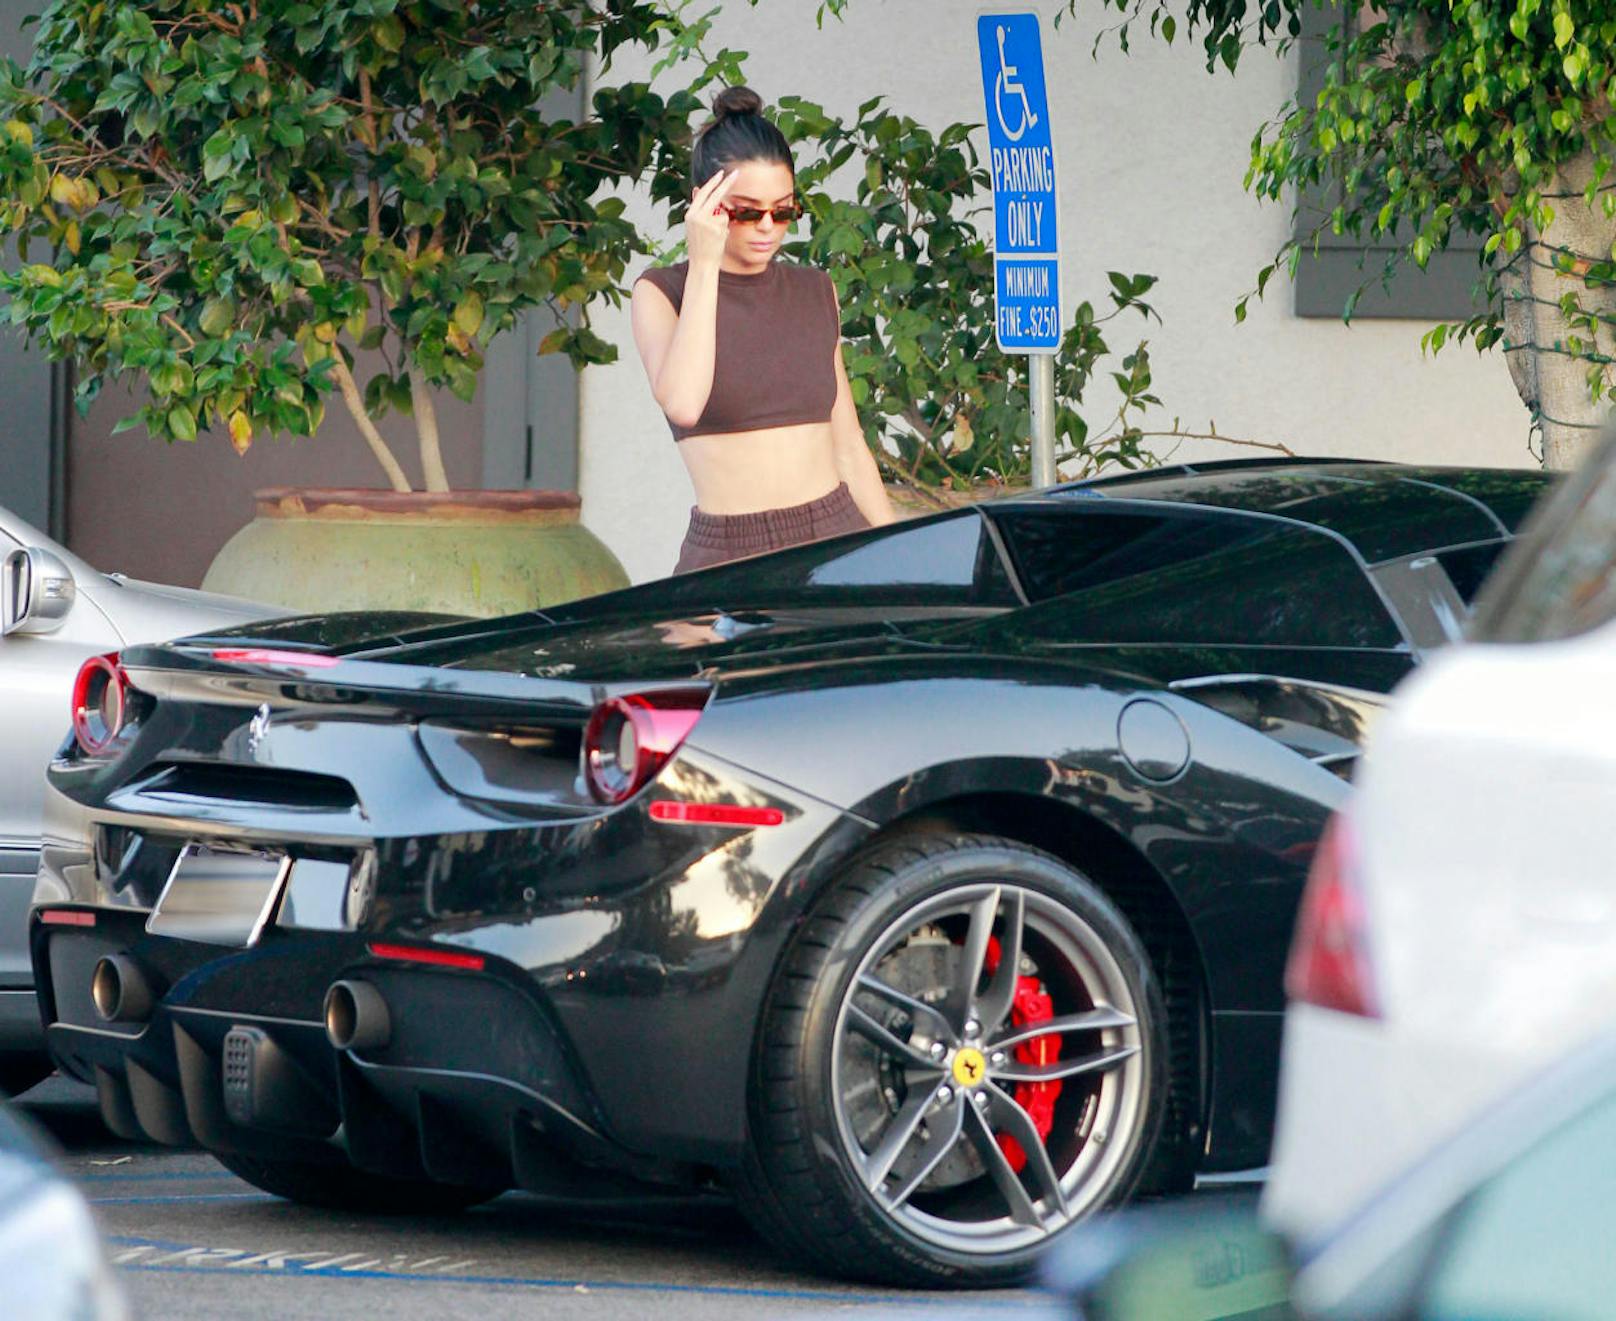 19.07.2018: Kendall Jenner versucht sich vor den Paparazzi zu verstecken, dass sie mit ihrem Ferrari am Behindertenparkplatz vor einem Sushi-Lokal in Bel Air parkt, ist aber nicht zu übersehen